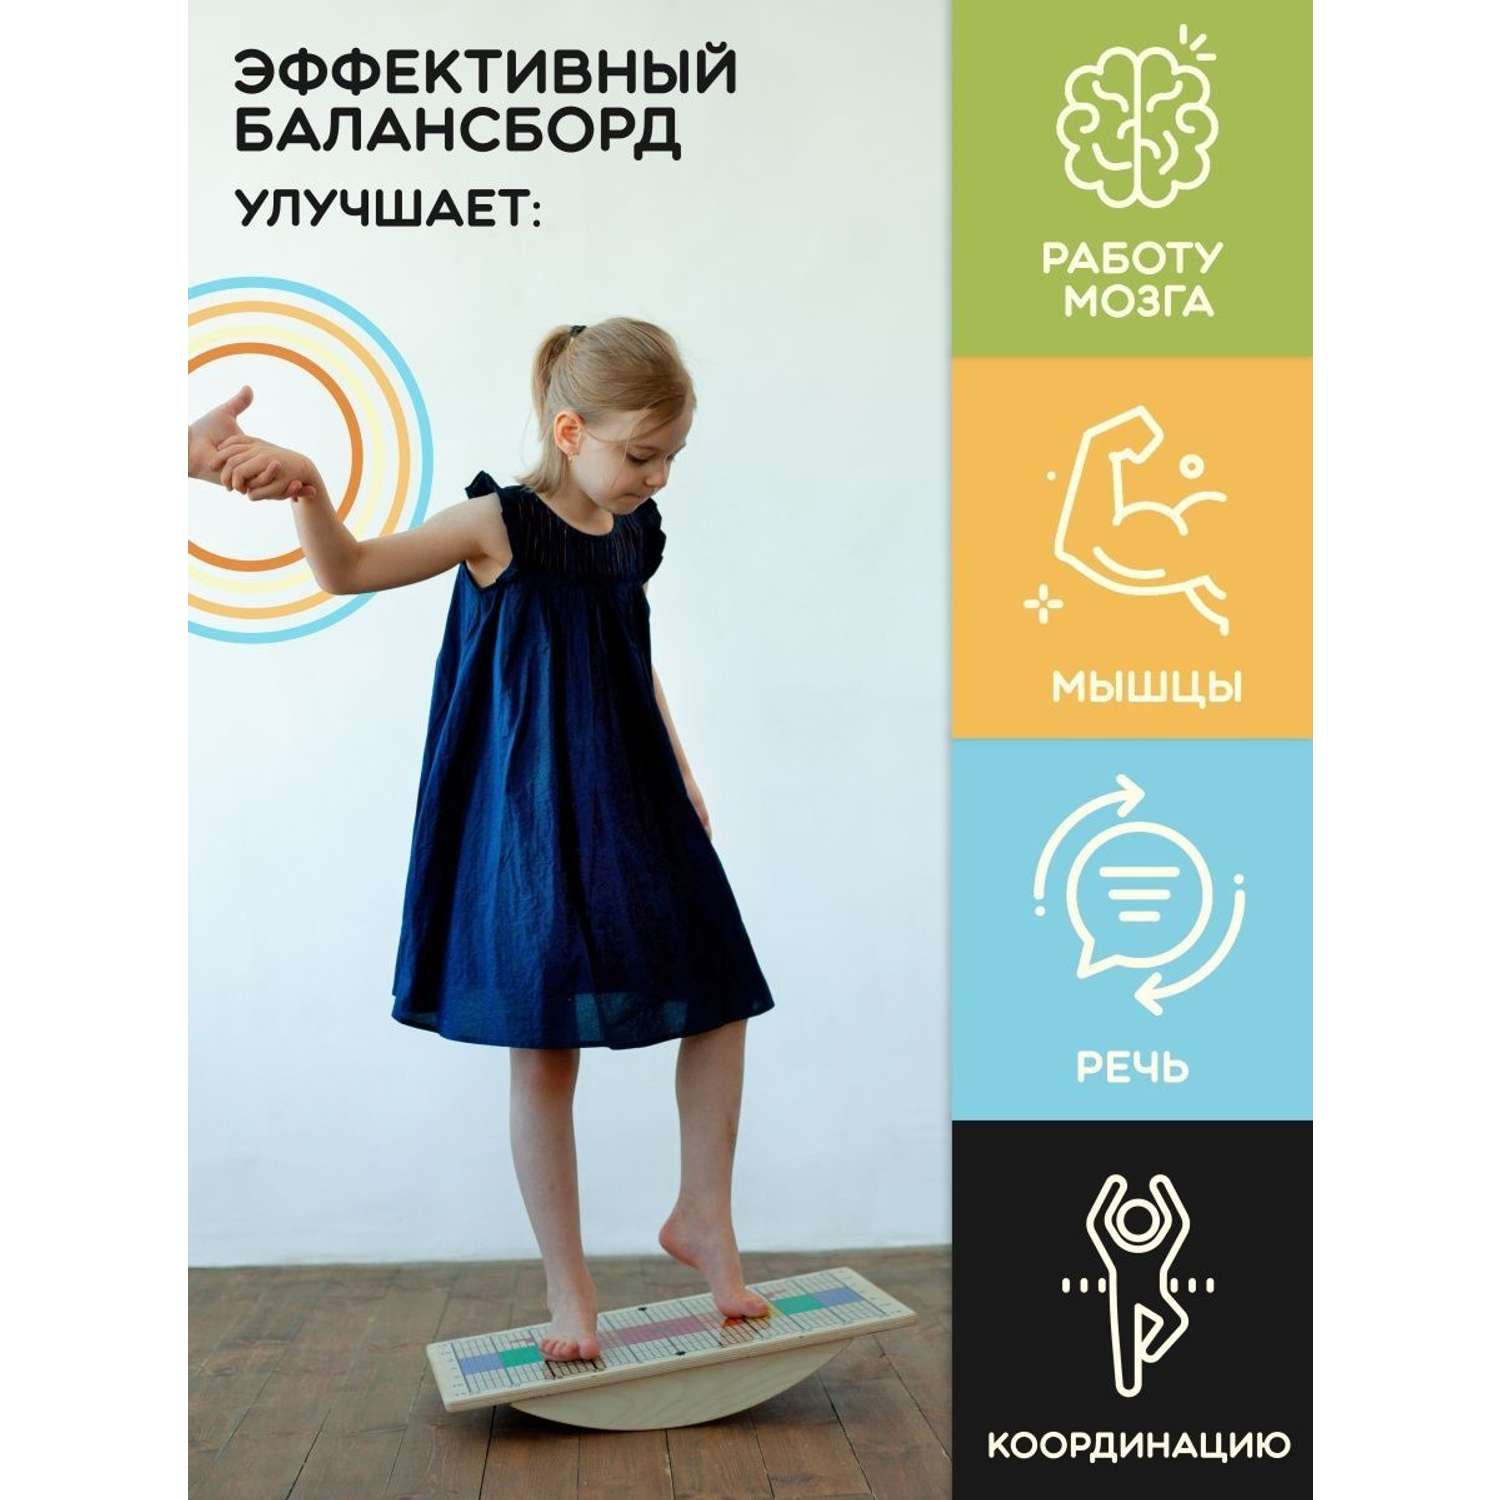 Доски балансировочные Хобби Шоп Бильгоу балансборд для детей - фото 2